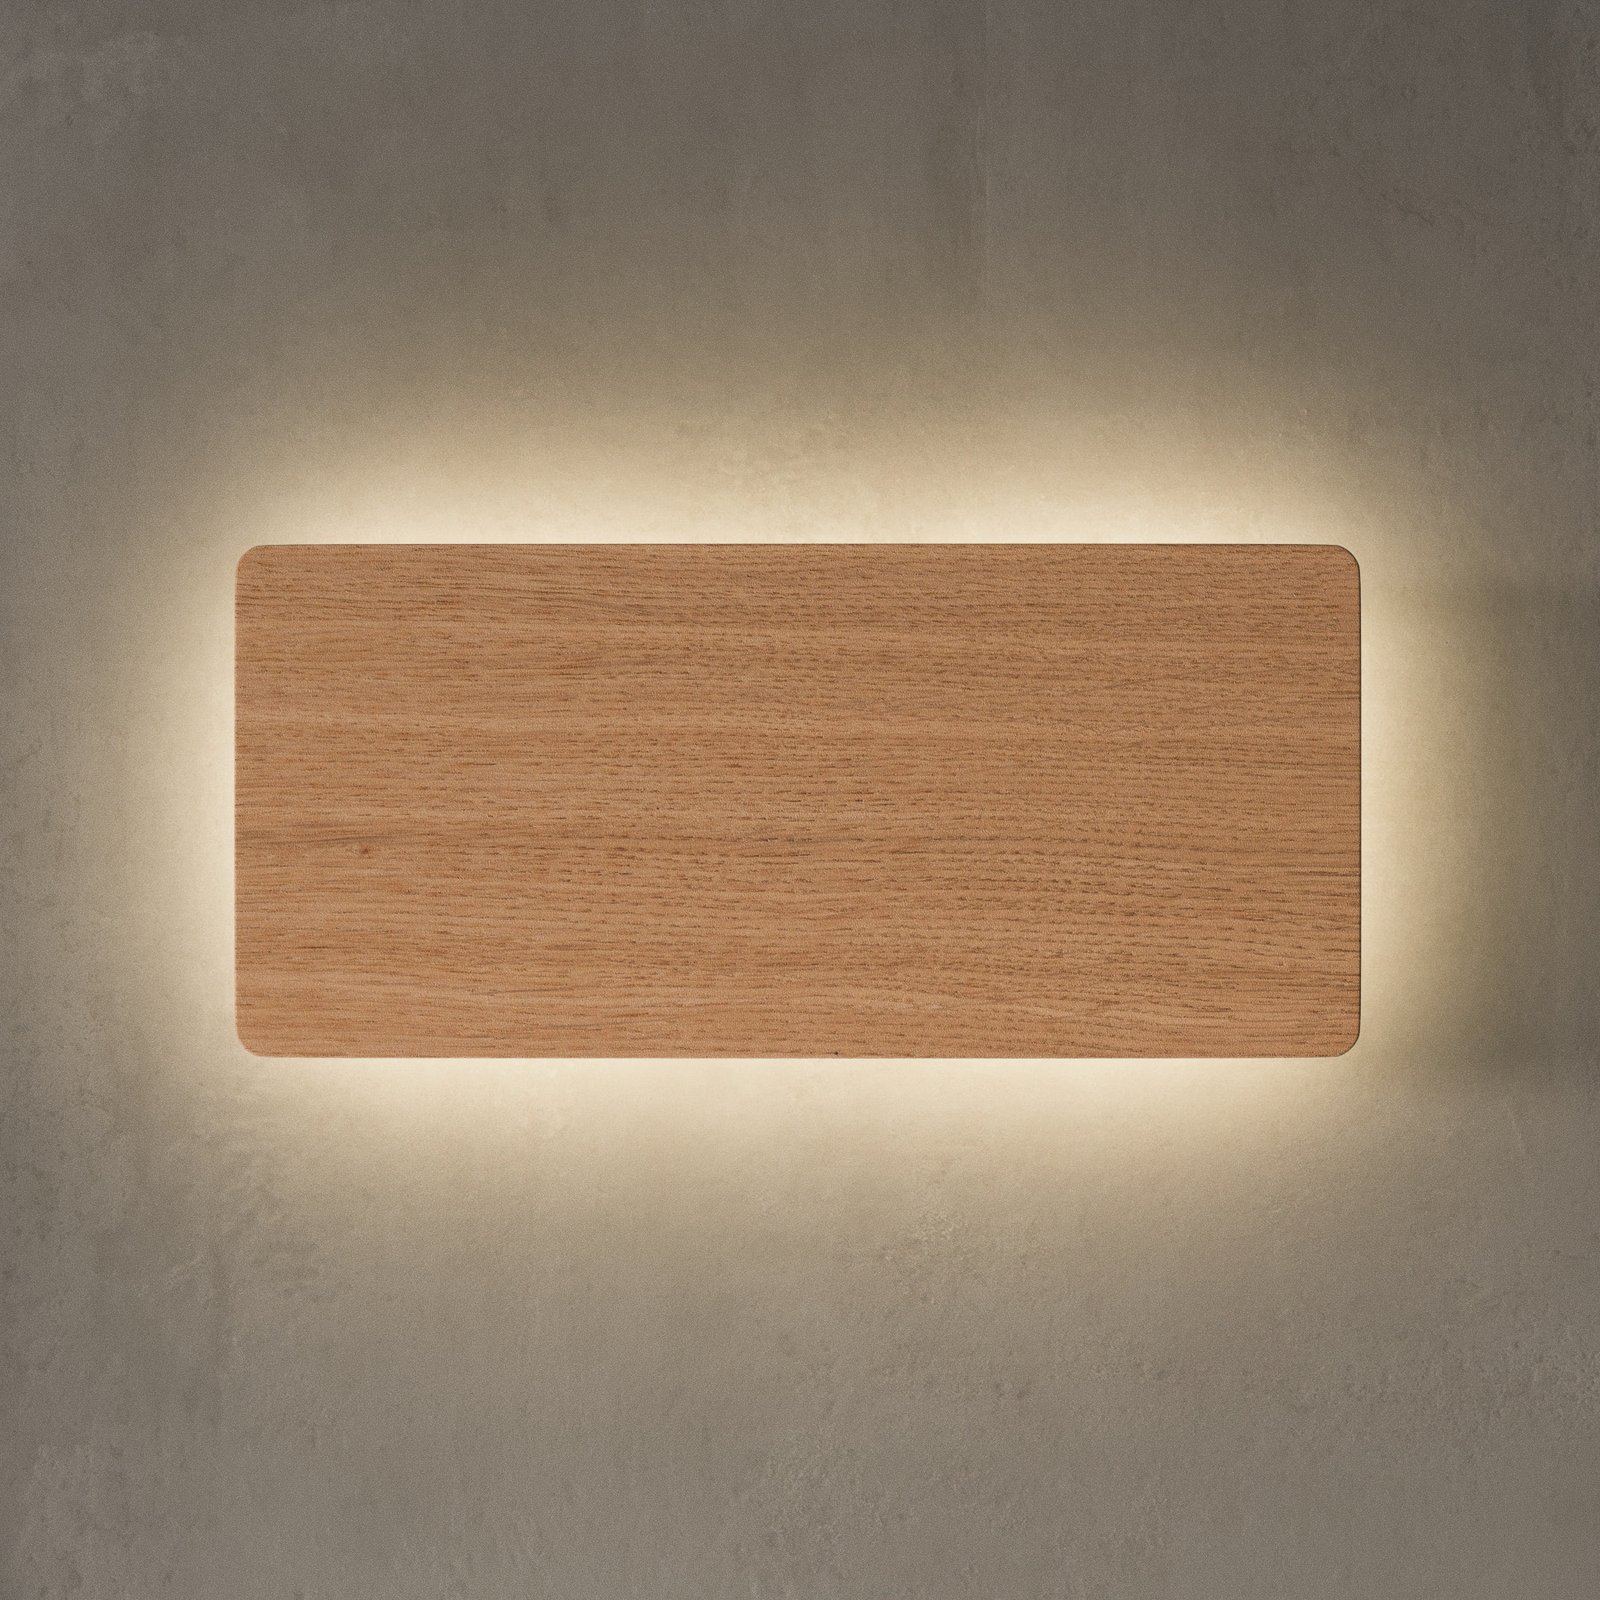 Envostar Tavola wall light, oak, 35 x 16 cm